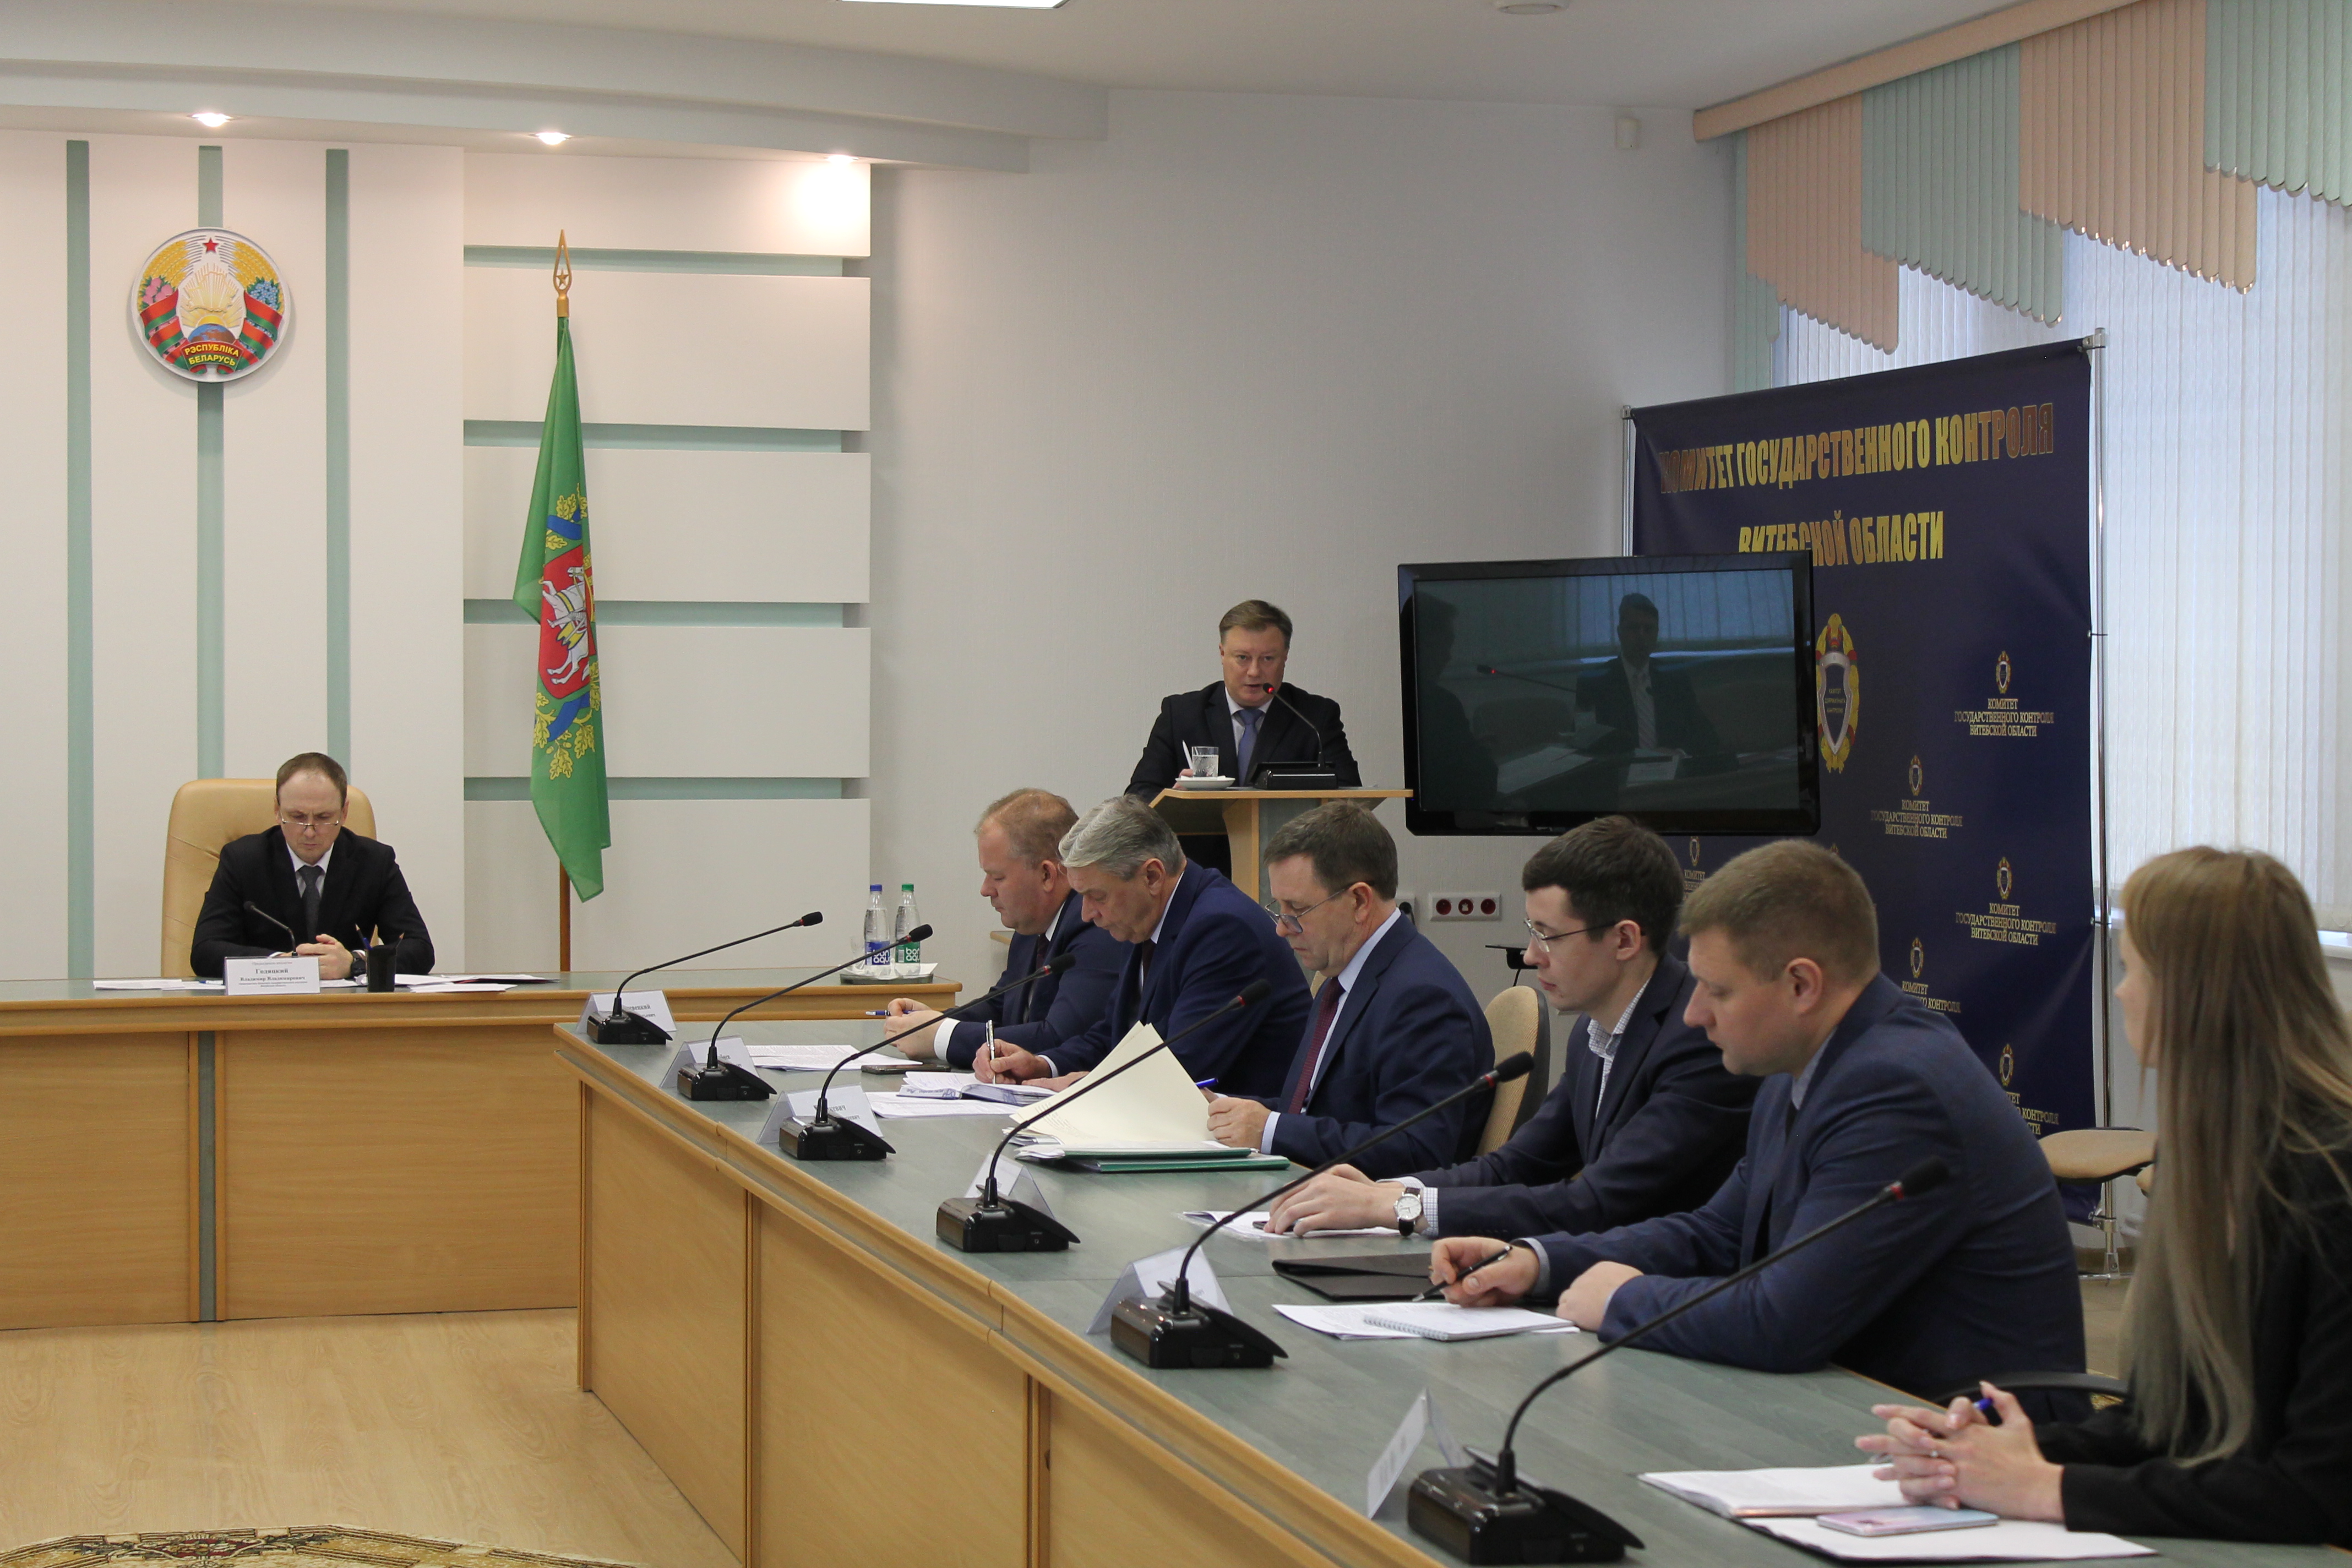 В Комитете госконтроля Витебской области на заседании коллегии 17.11.2022 рассмотрены результаты проведенных контрольных мероприятий в сфере здравоохранения